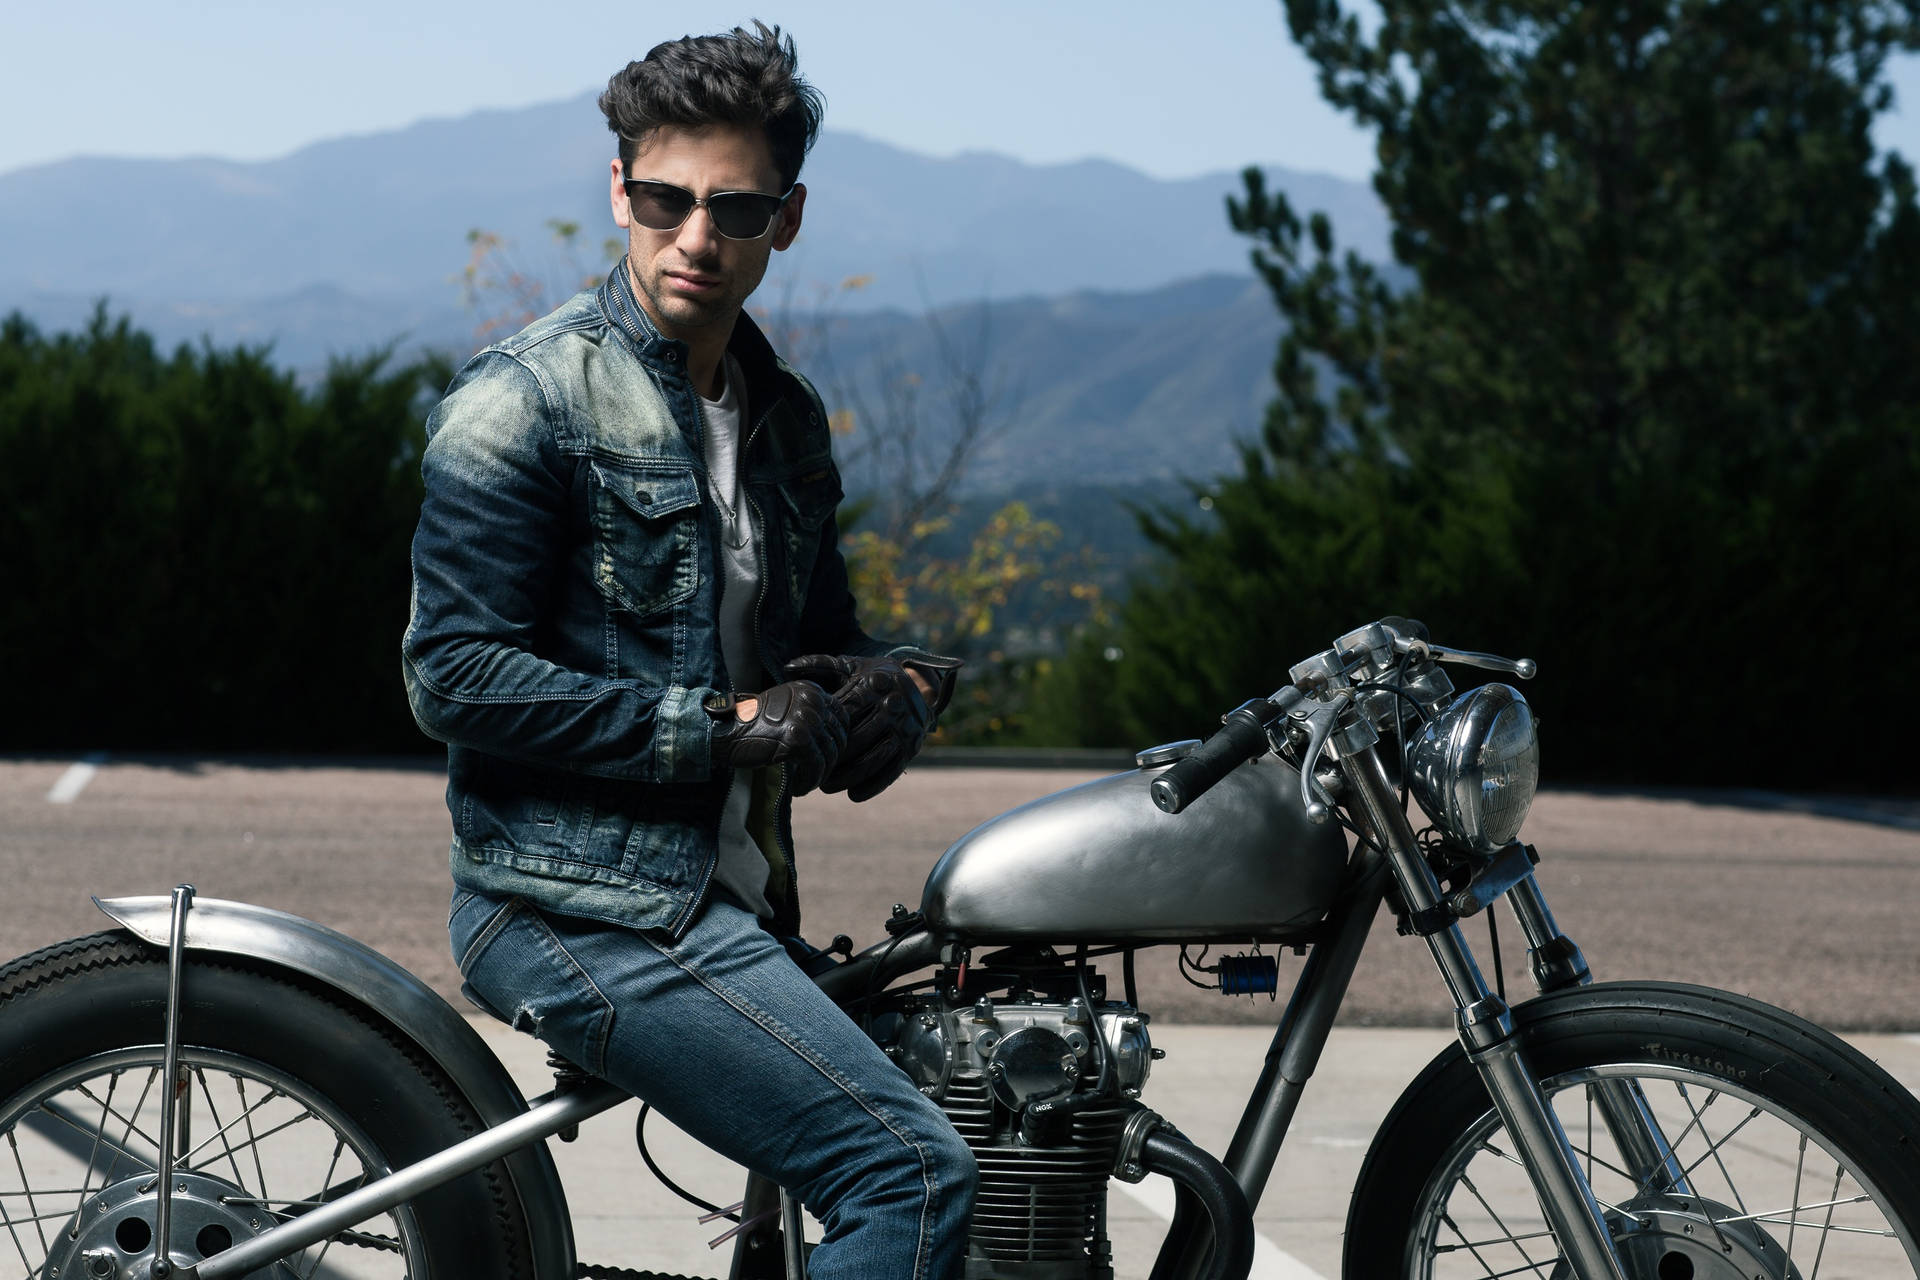 Hot Guy Riding Motorbike Wallpaper